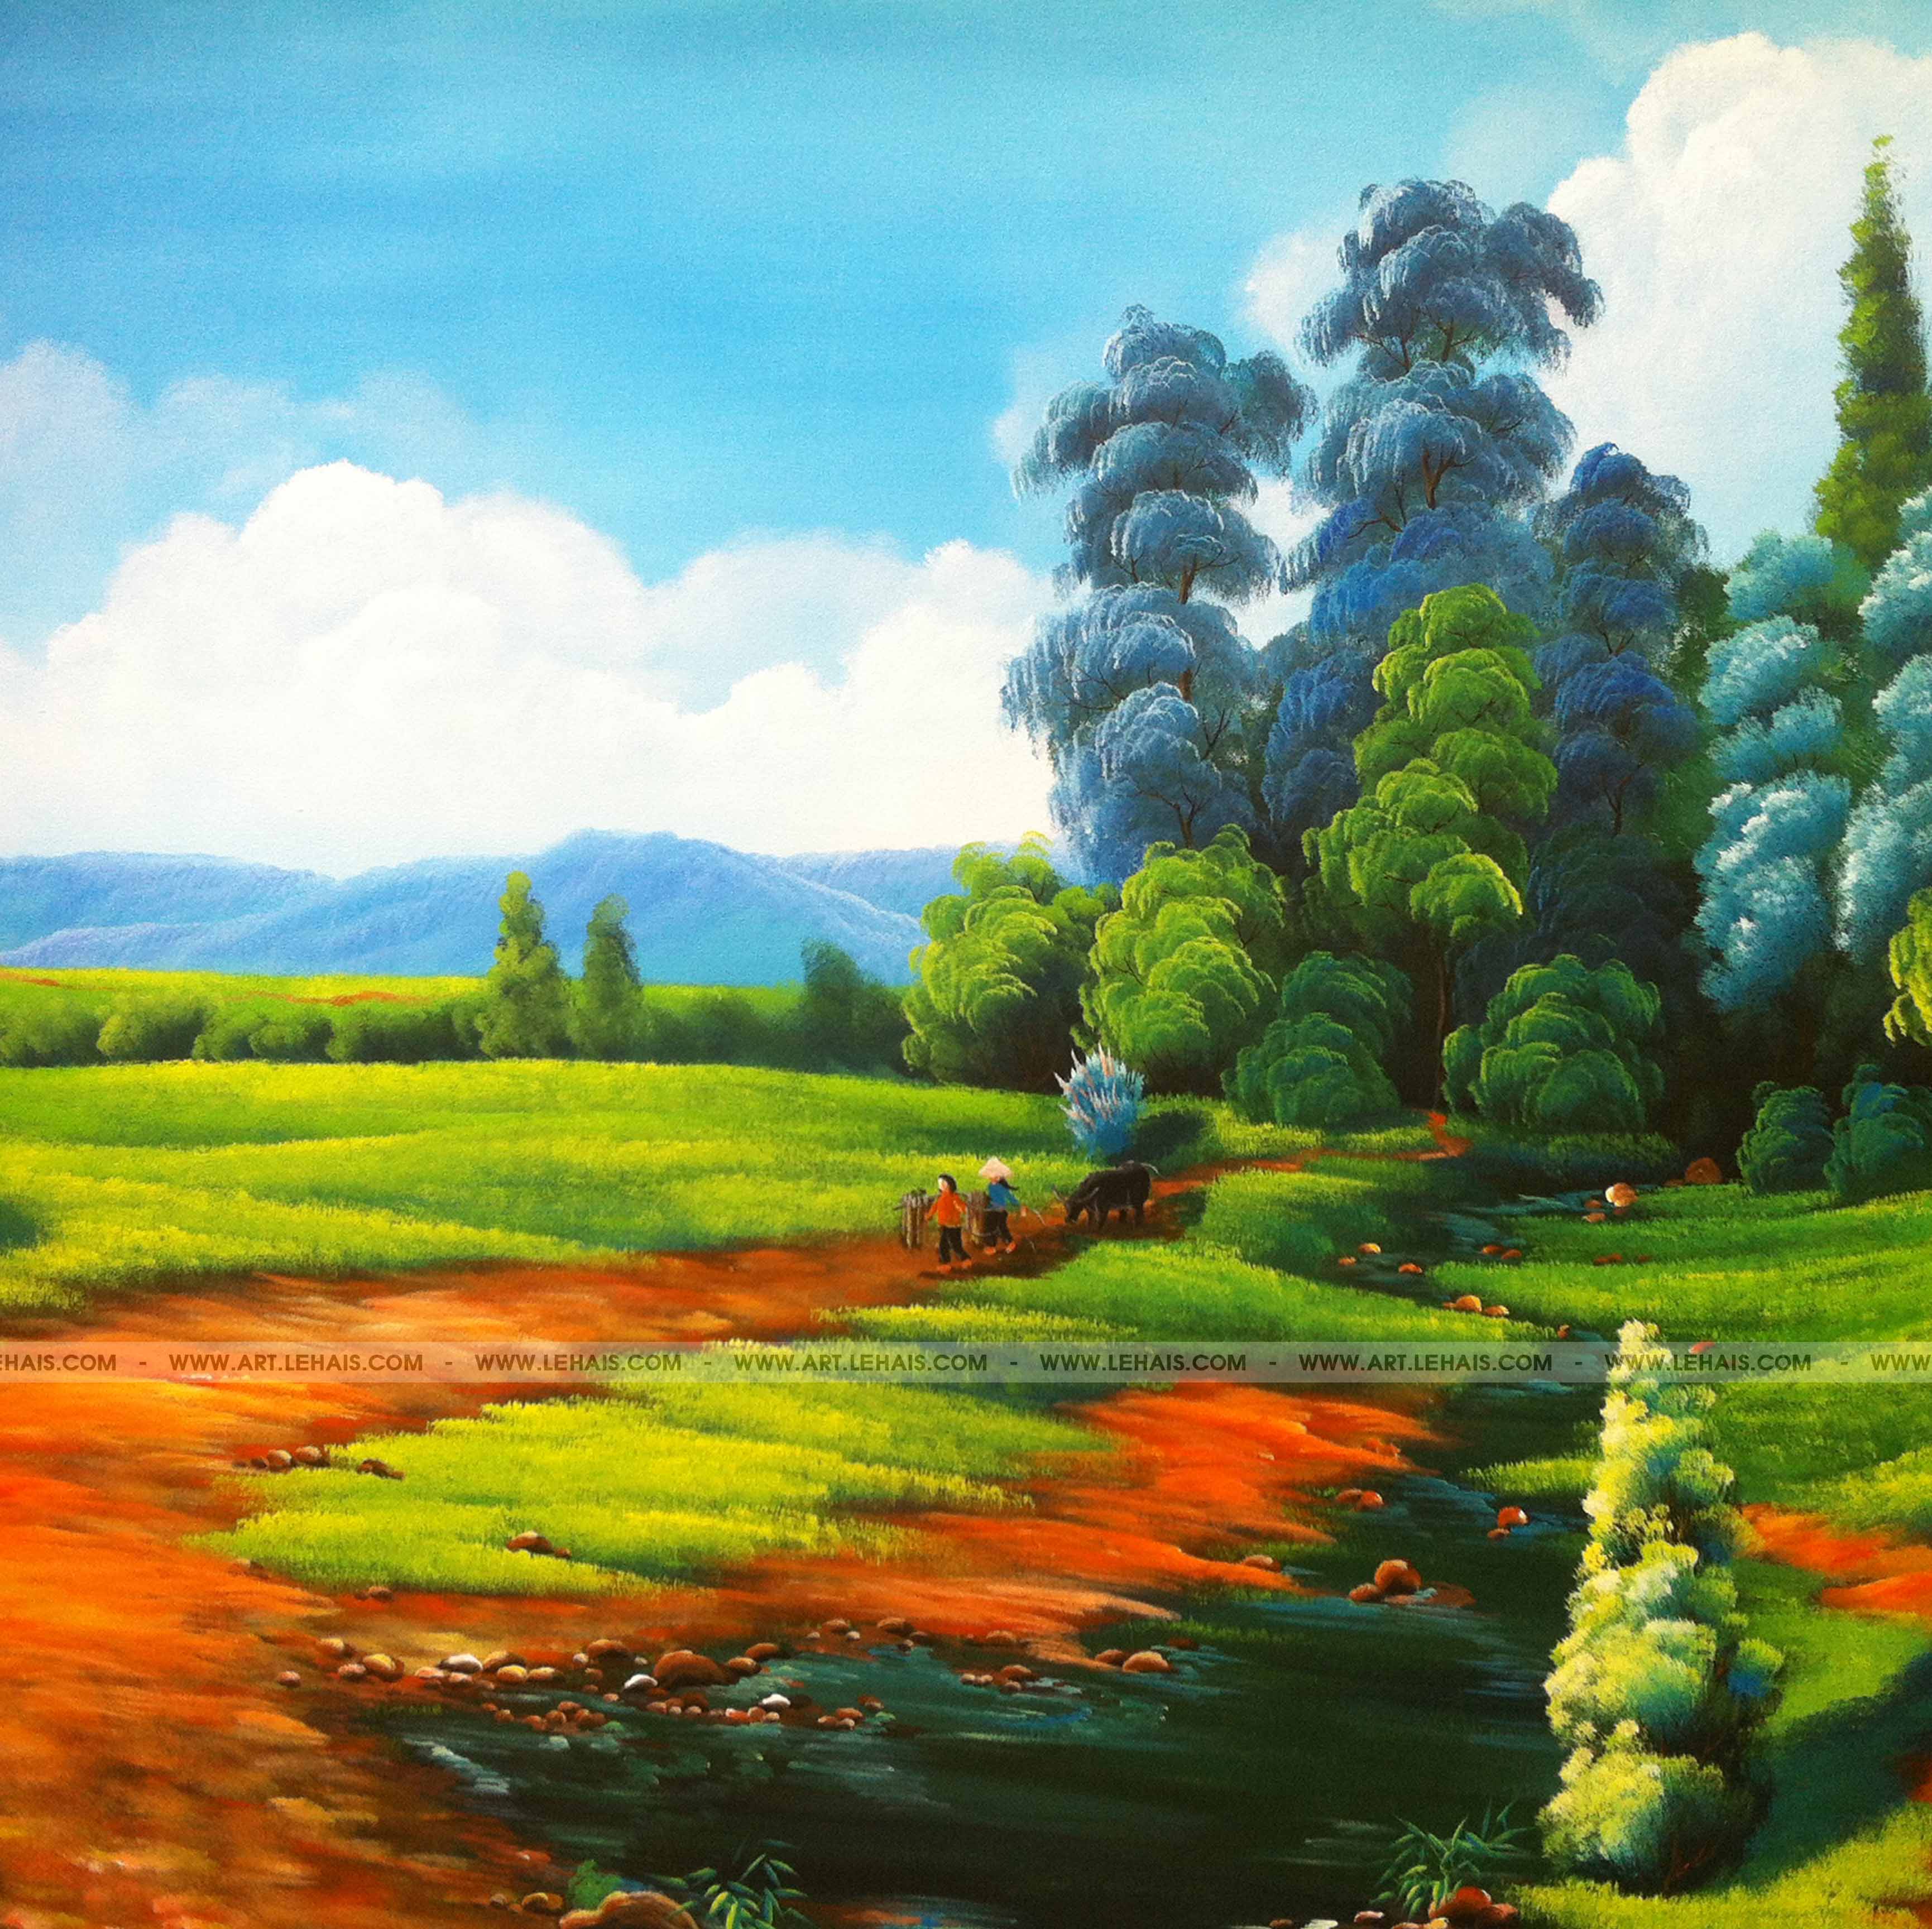 Vẽ tranh phong cảnh bằng màu nước  Watercolor Tutorial Landscape  YouTube